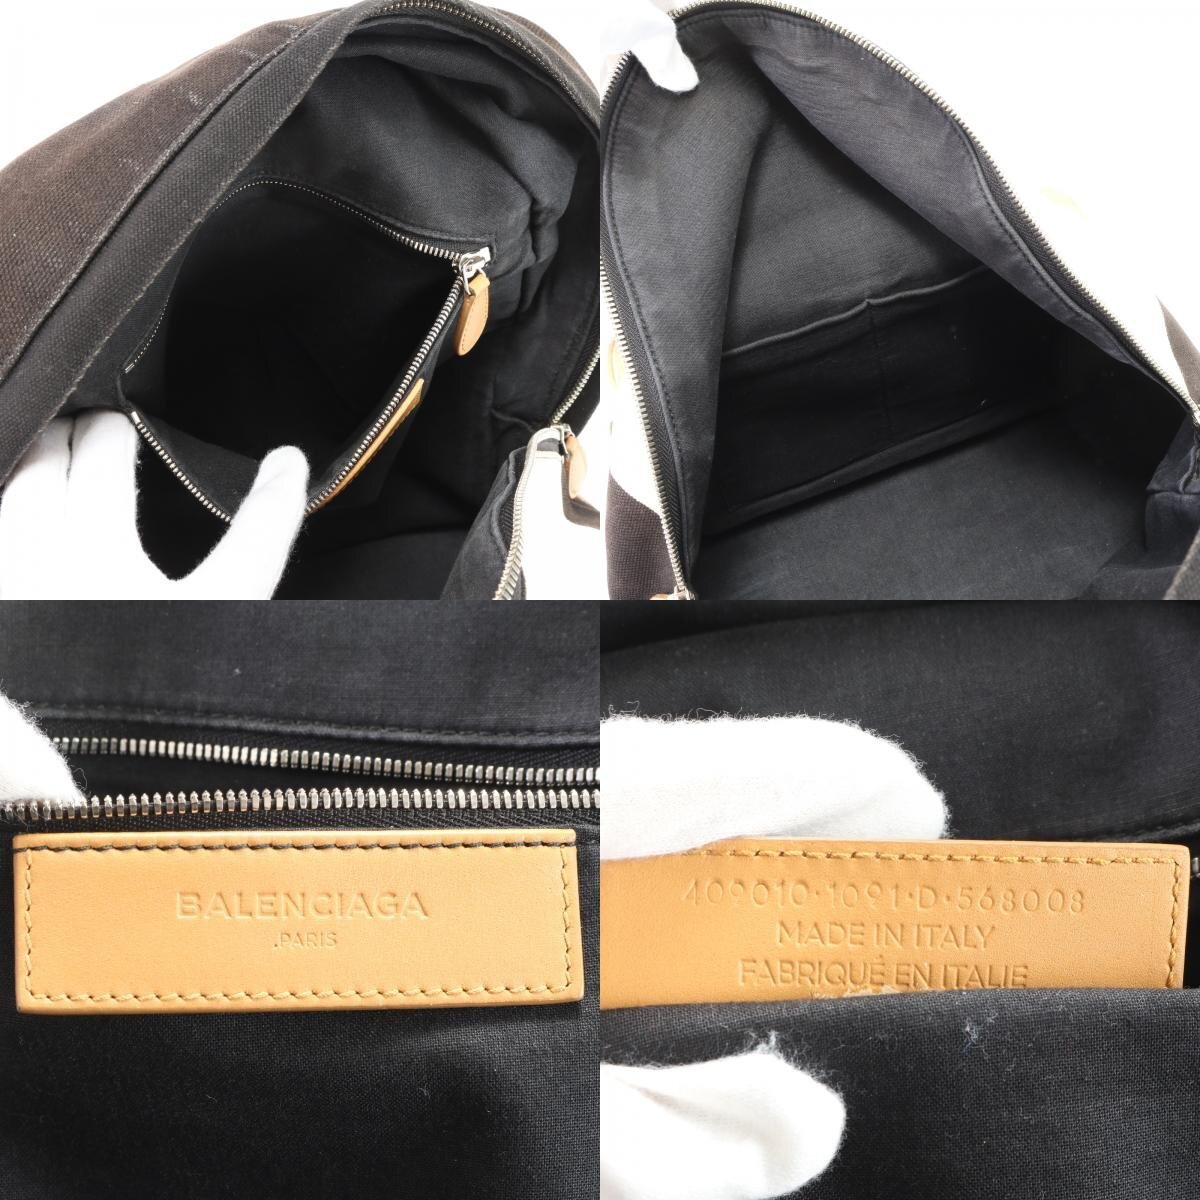 1 иен # Balenciaga # кожа парусина рюкзак рюкзак рюкзак сумка на плечо торговая книга вид сумка A4 мужской EEM V17-1